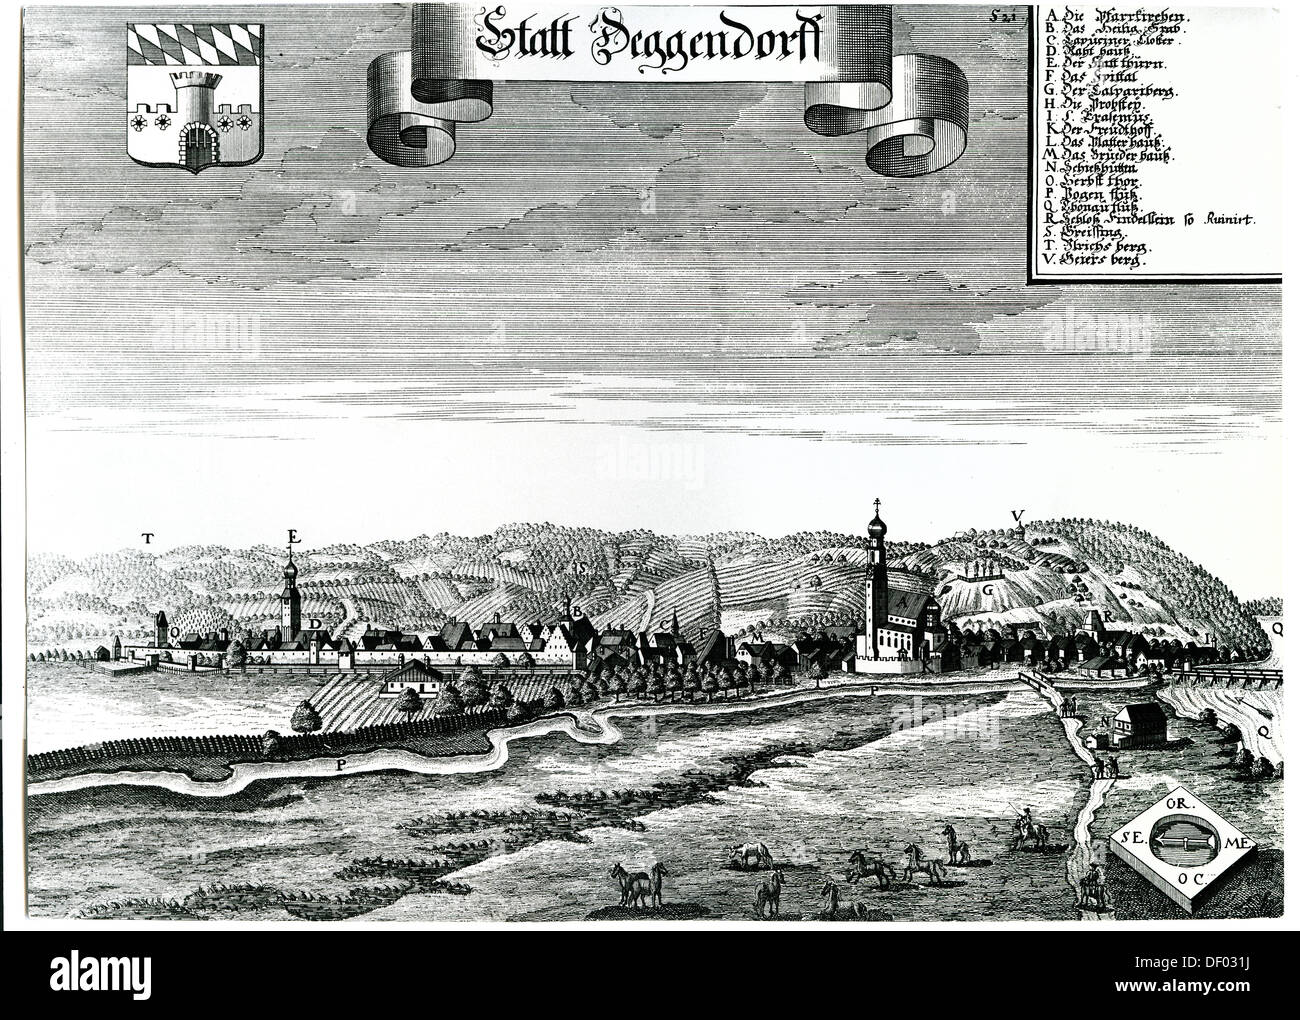 Deggendorf, Bassa Baviera, Baviera, dal libro Topographie Bayern da M. Wenning, intorno al 1700 Foto Stock